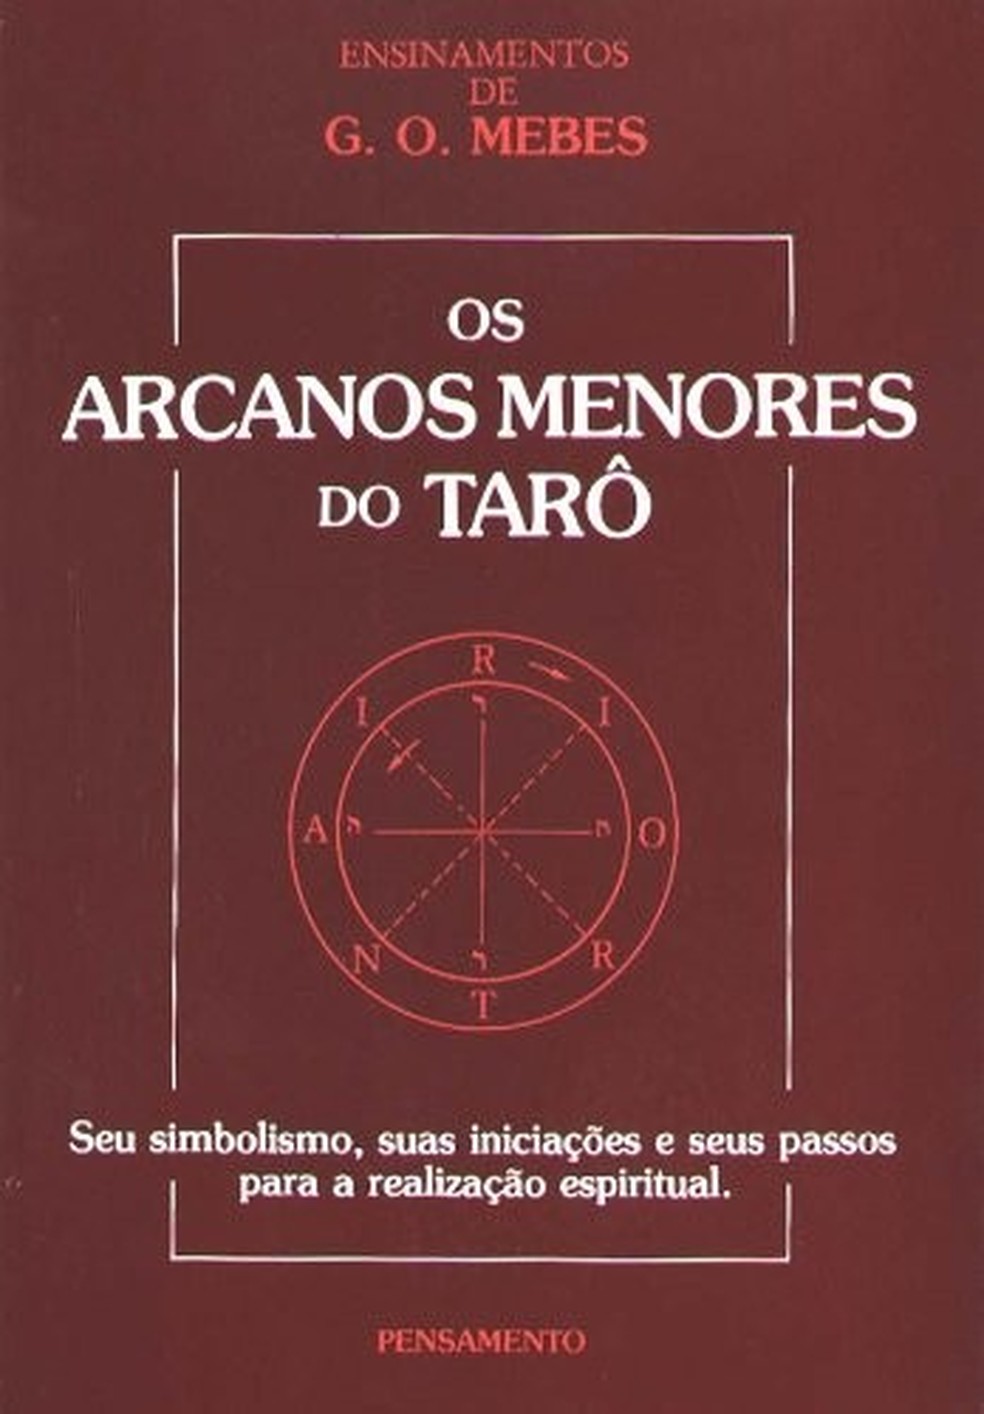 Os Arcanos menores do Tarot, disponível na Amazon (Foto: Divulgação) — Foto: Glamour